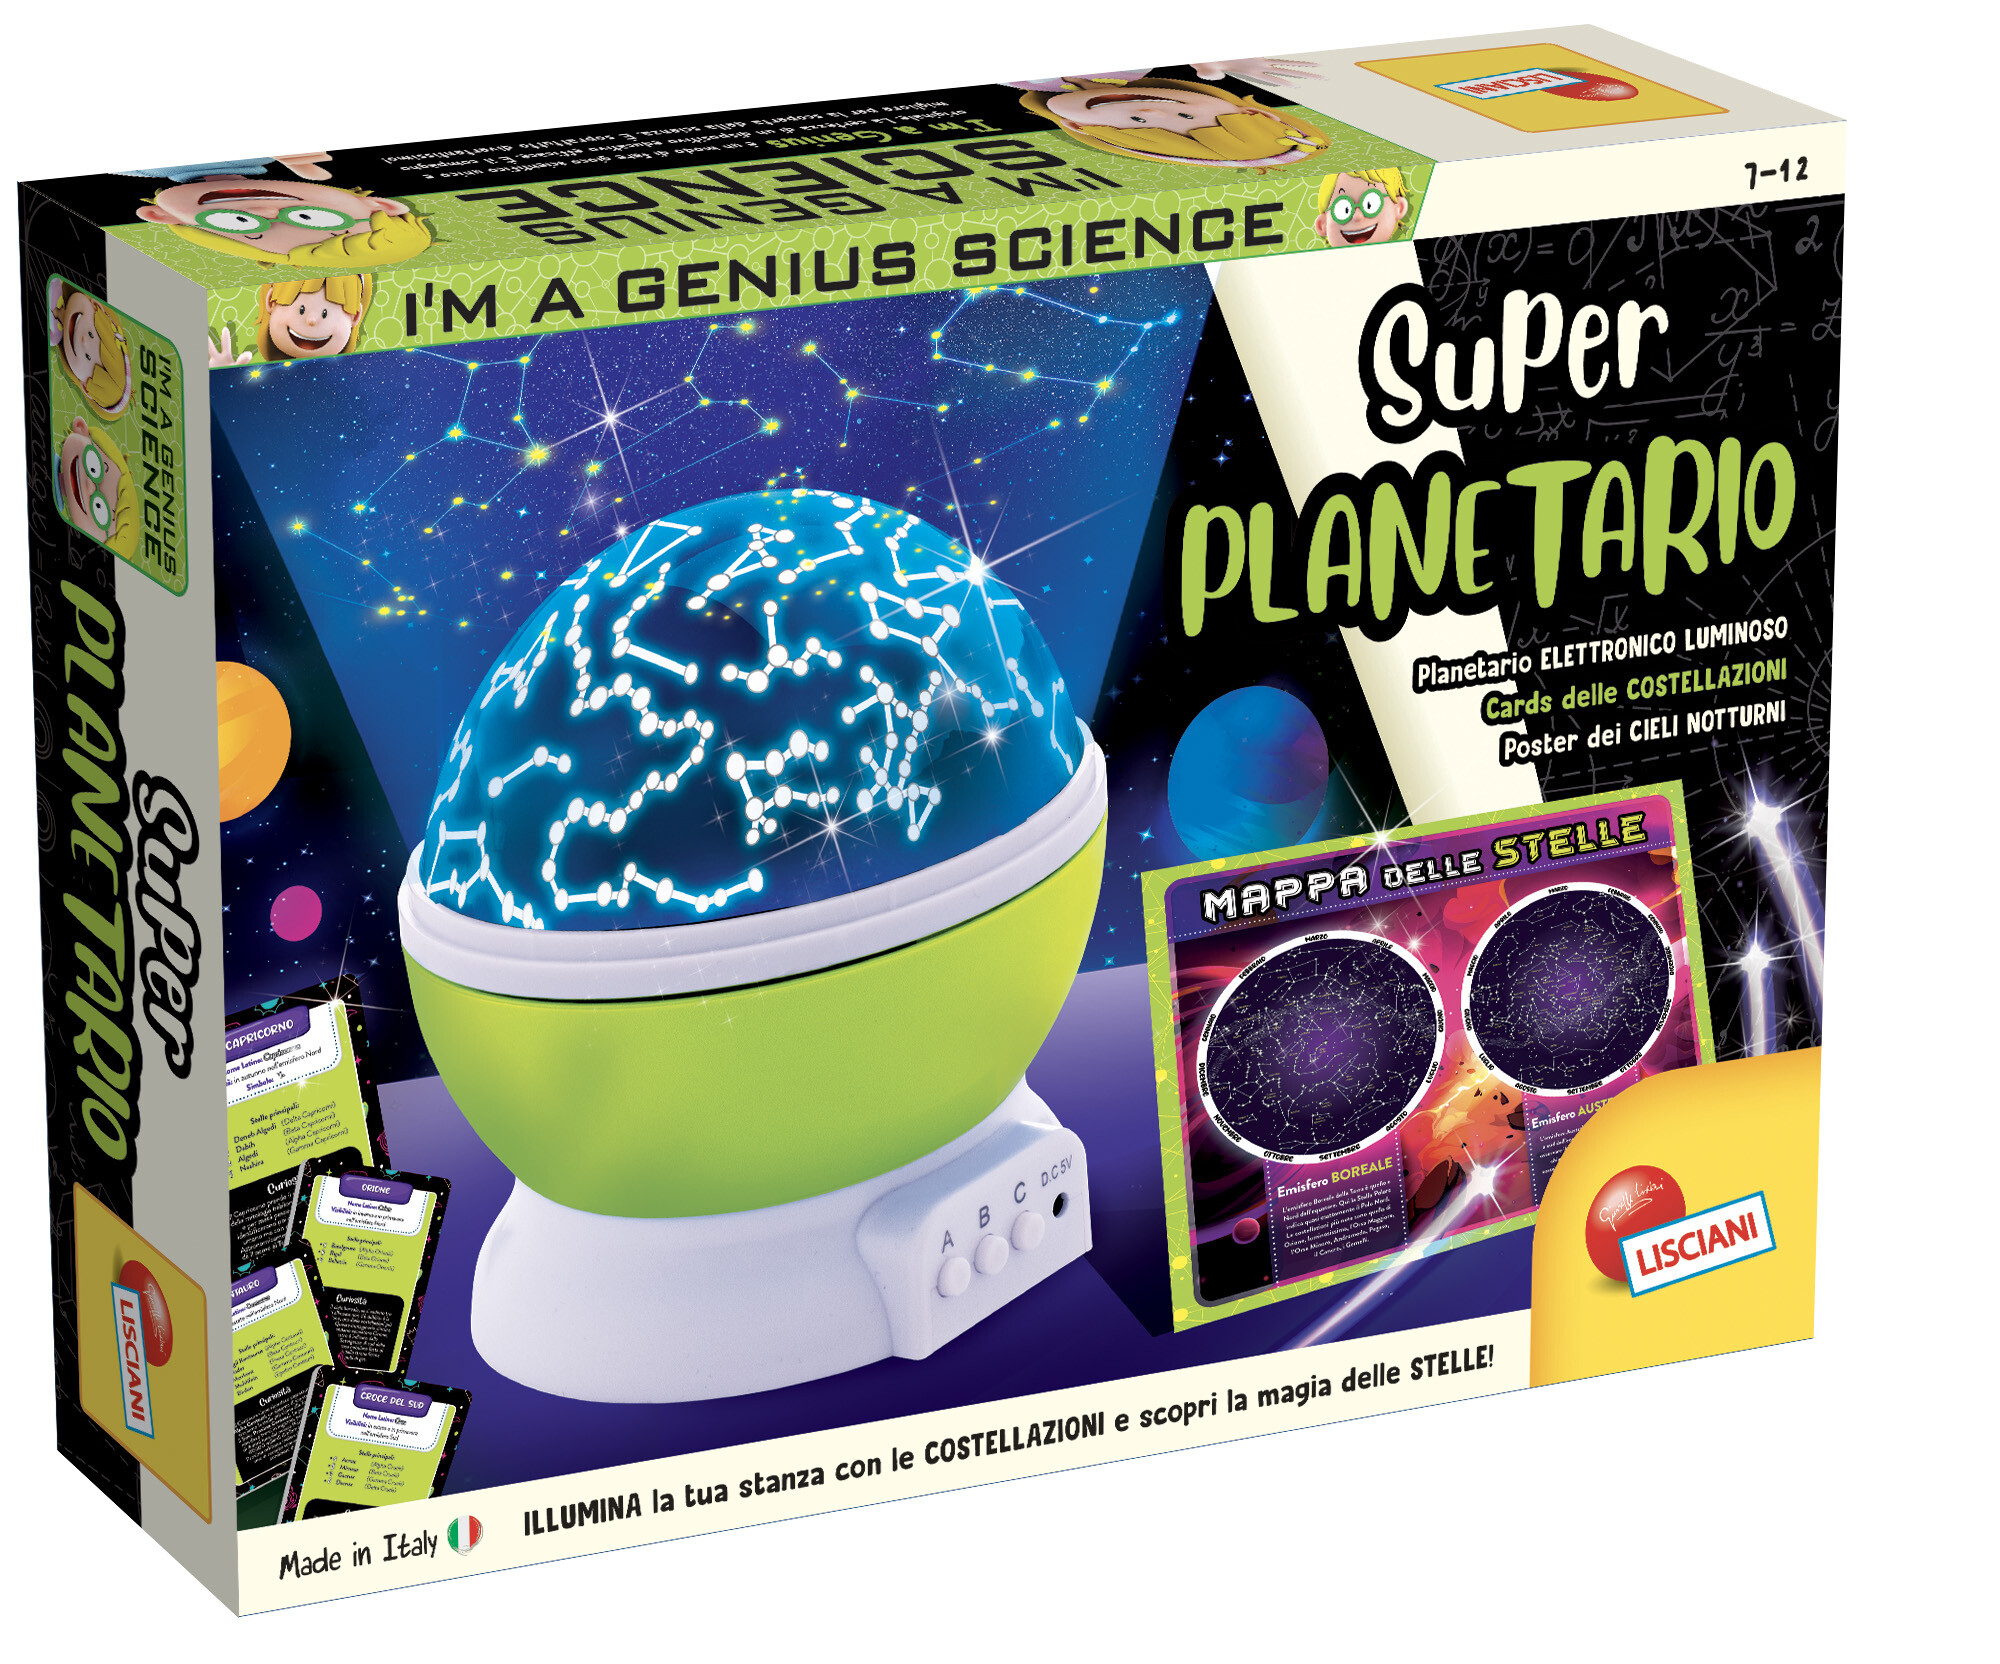 I'm a genius super planetario - LISCIANI